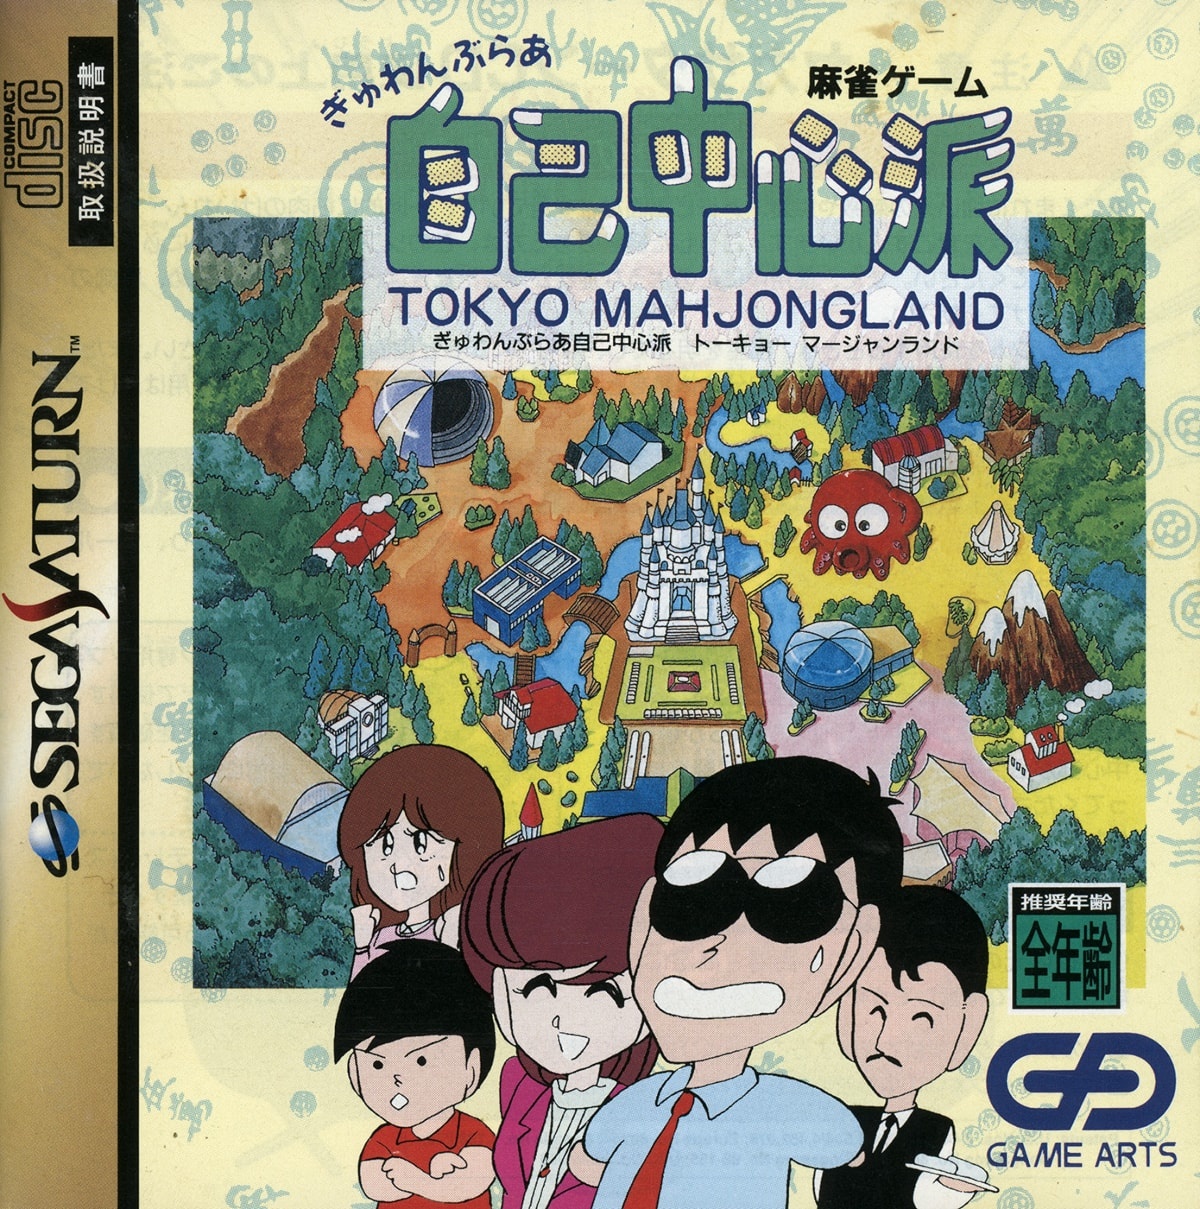 Capa do jogo Gambler Jiko Chuushinha: Tokyo Mahjongland